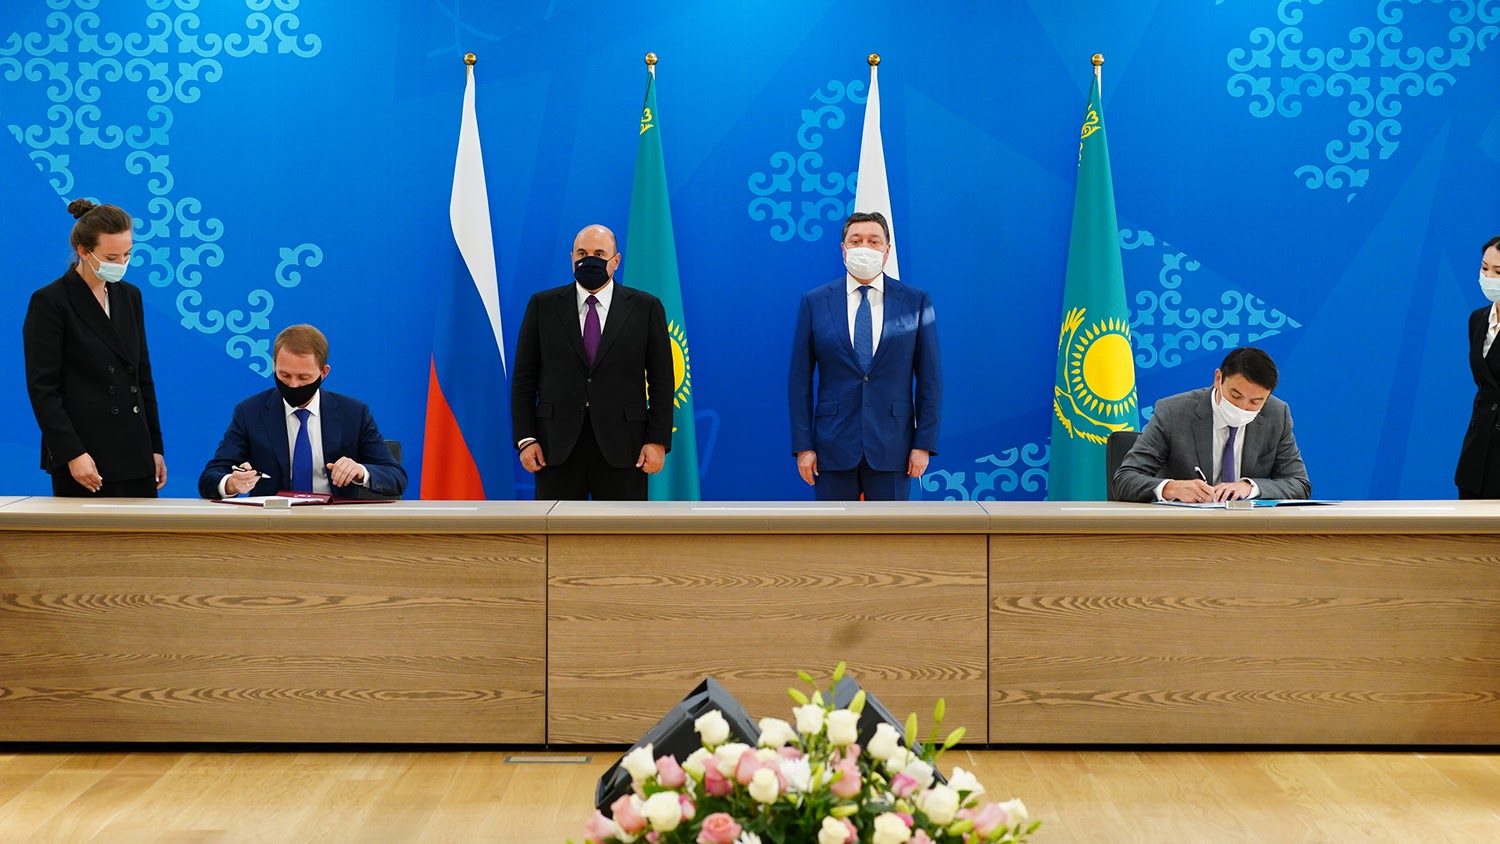 Какие документы подписали главы правительств Казахстана и России 